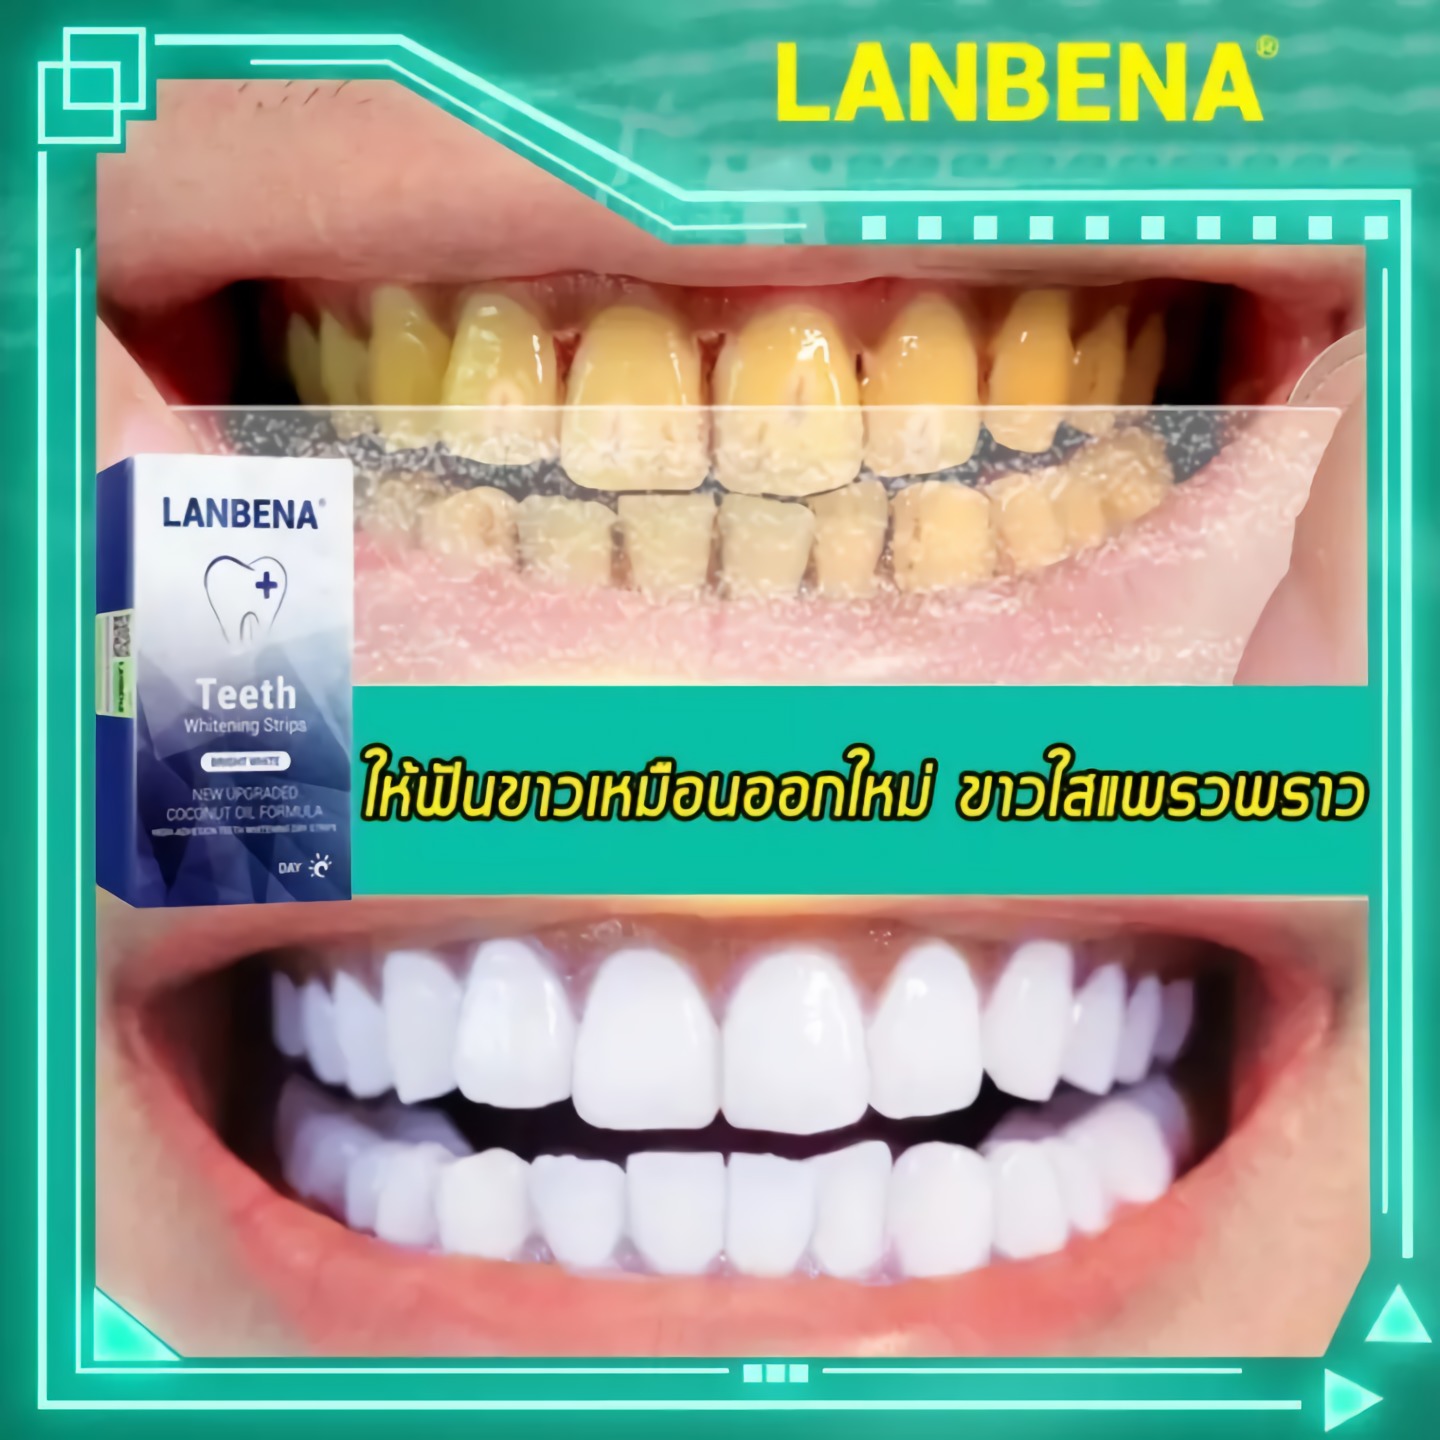 แผ่นฟอกฟัน แผ่นฟอกสีฟัน ฟันขาว แผ่นแปะฟันขาว LANBENA Teeth Whitening Strips For Night Oral Hygiene Teeth Veneers White Strips Removes Plaque Stains Easy Carry 7 Pairs / Box Teeth Care